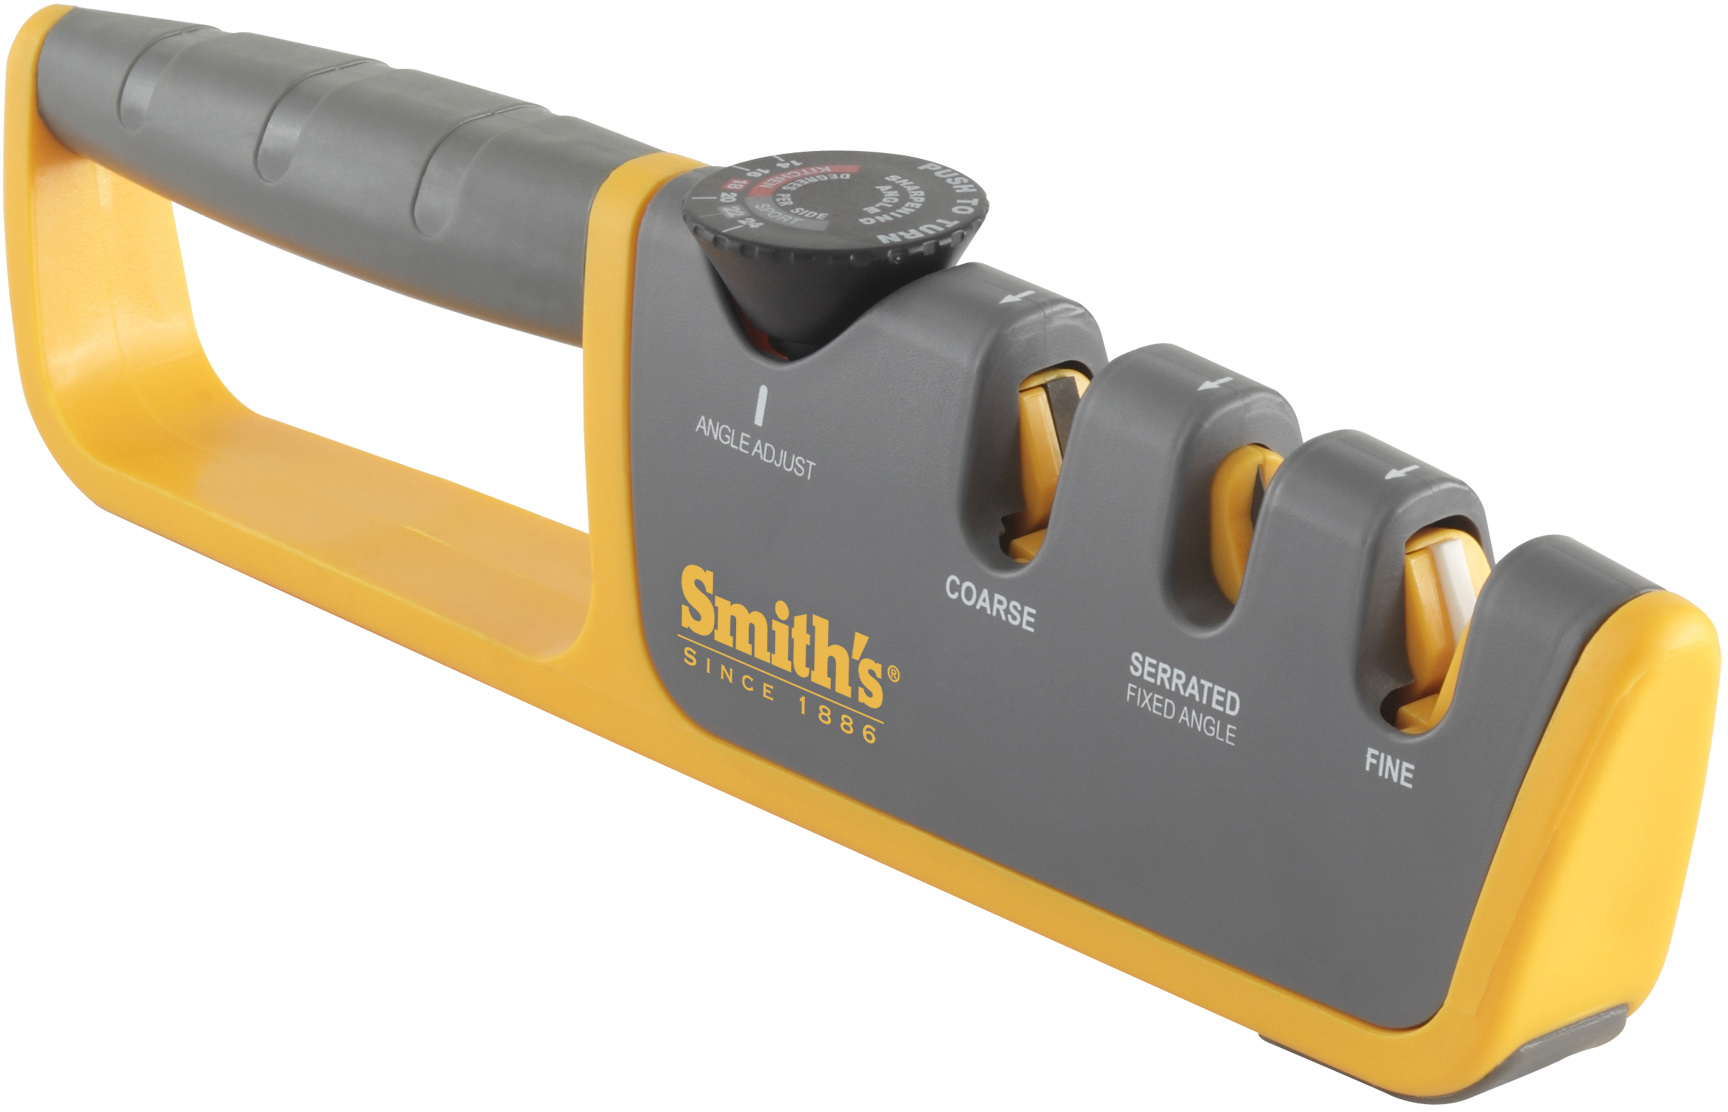 Smith's Jiffy-Pro Handheld Sharpener